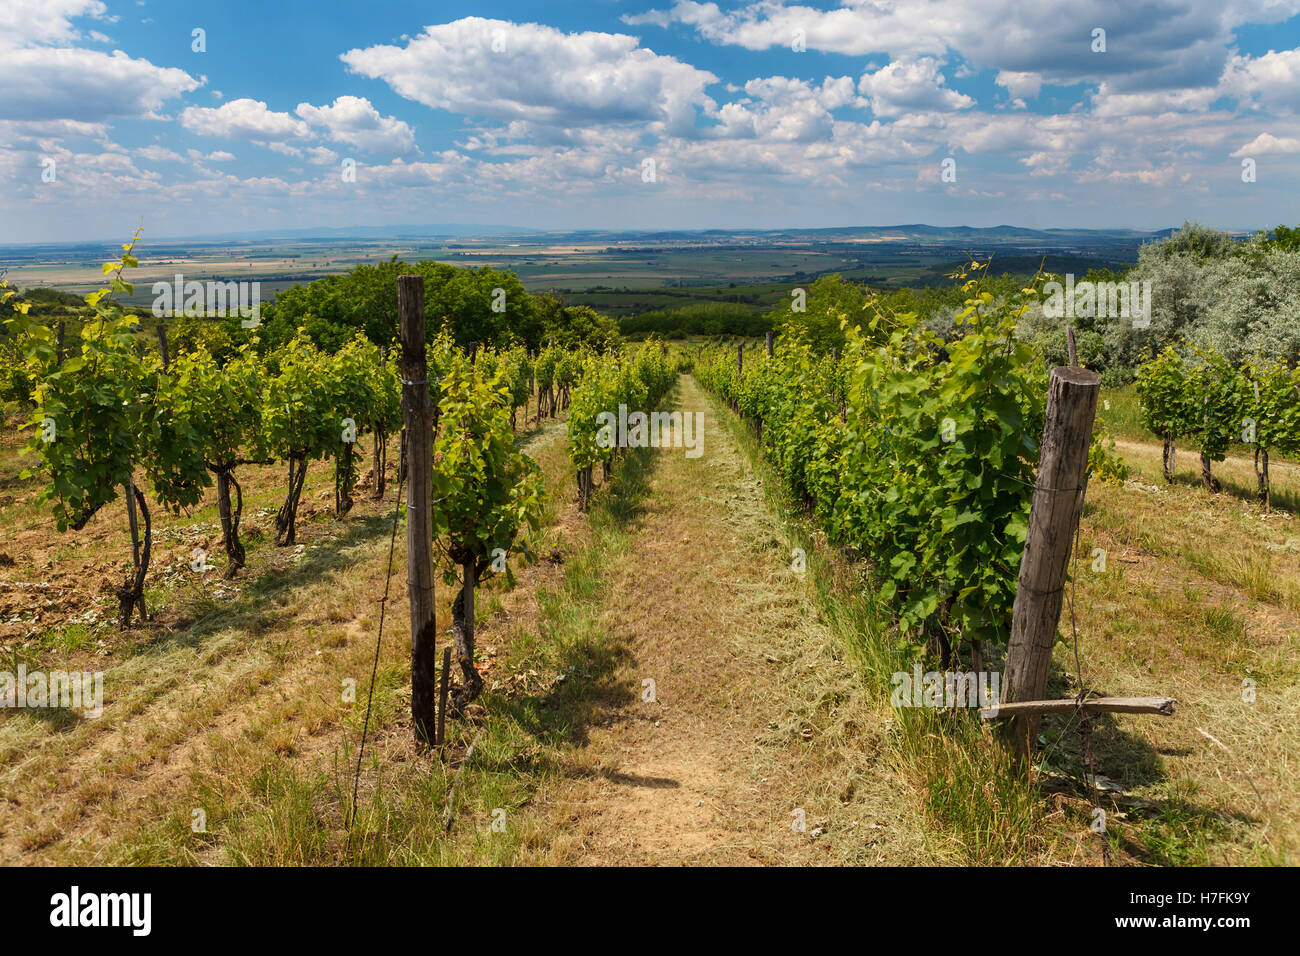 Vigne - viticulture vert sous ciel nuageux, Tokaj, Hongrie, Europe Banque D'Images